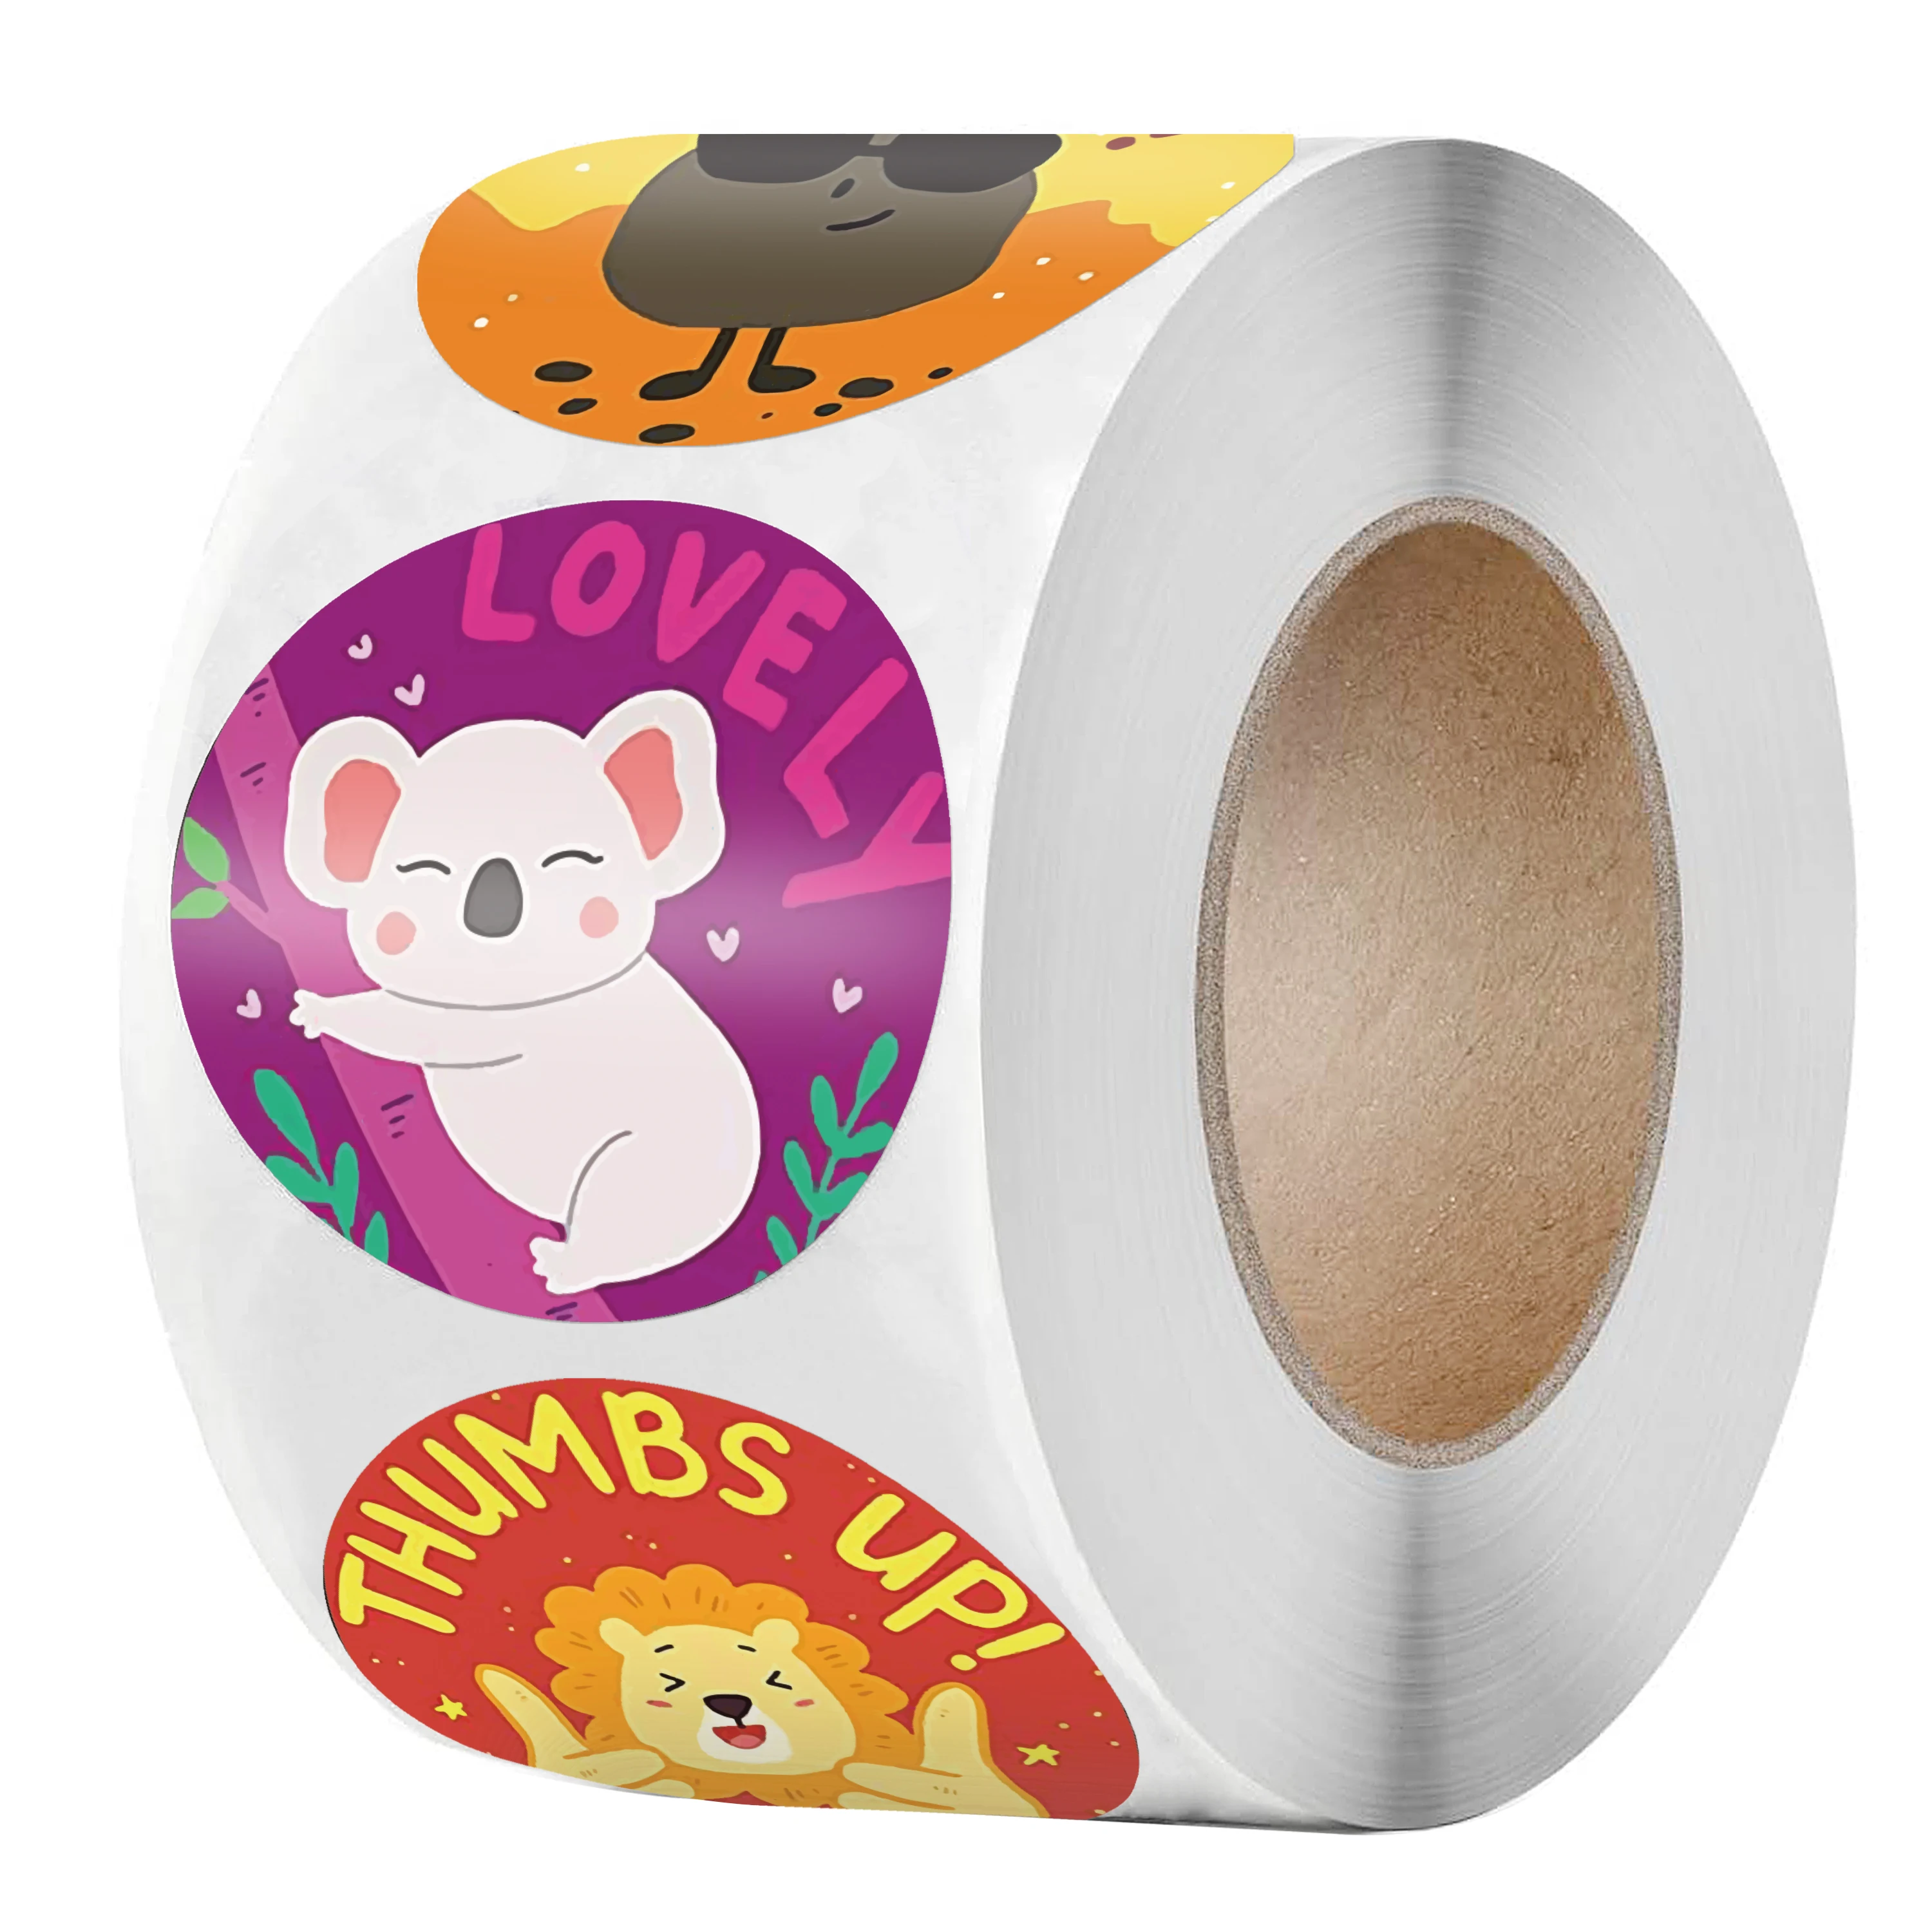 New Animals Sticker for Kids 500pcs/roll Catton Sticker With Encourage Words 1 inch for School Teacher Supplies Reward Sticker images - 6